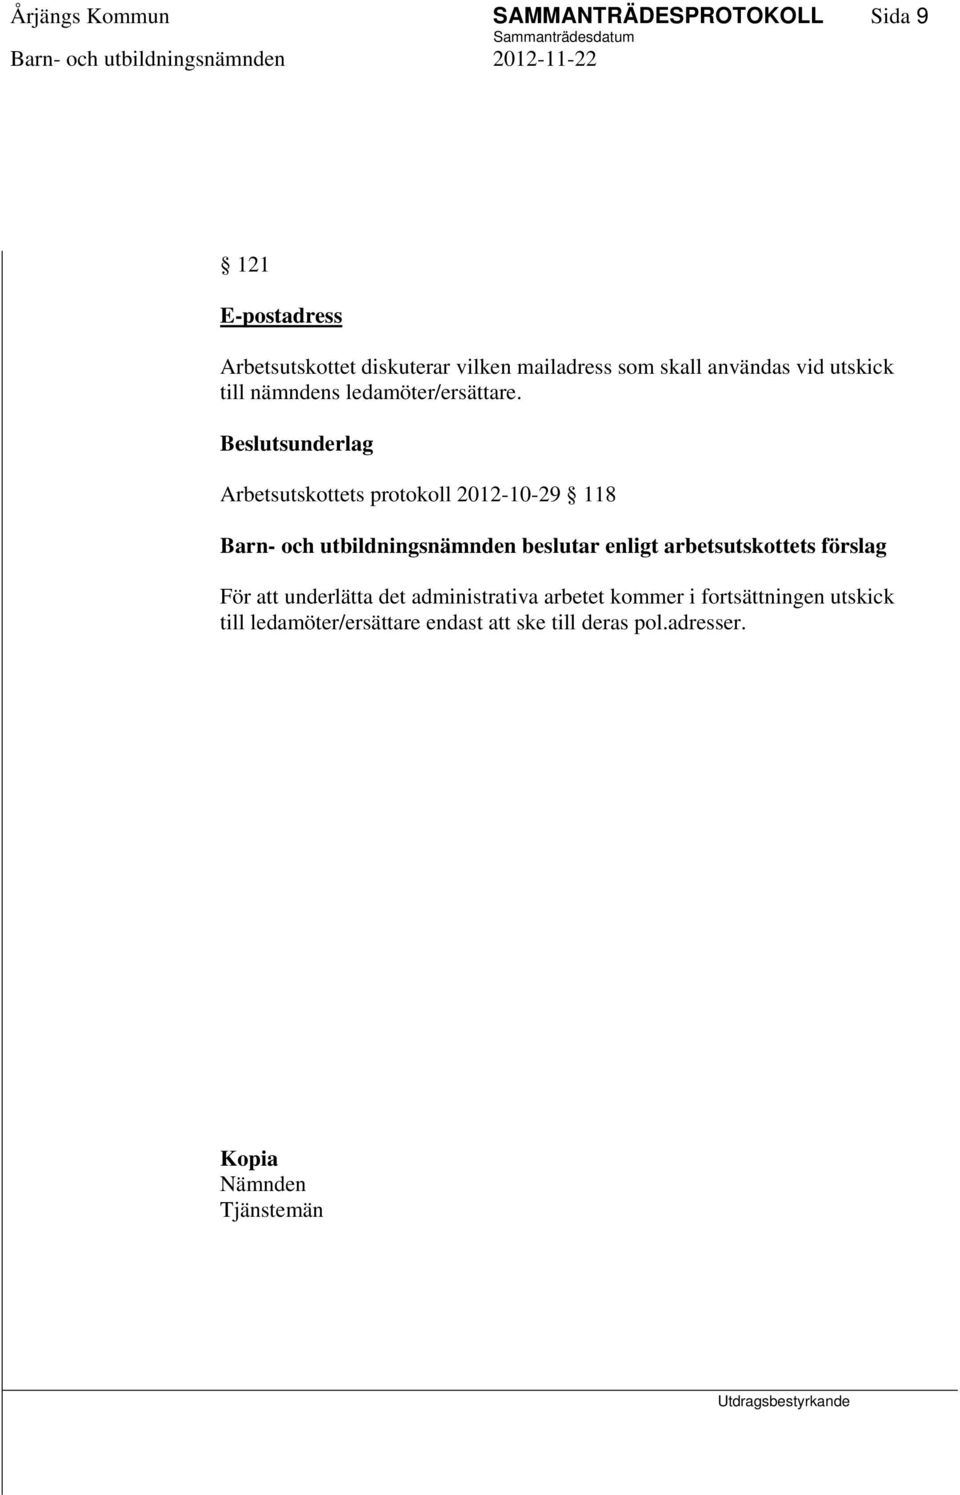 Arbetsutskottets protokoll 2012-10-29 118 enligt arbetsutskottets förslag För att underlätta det